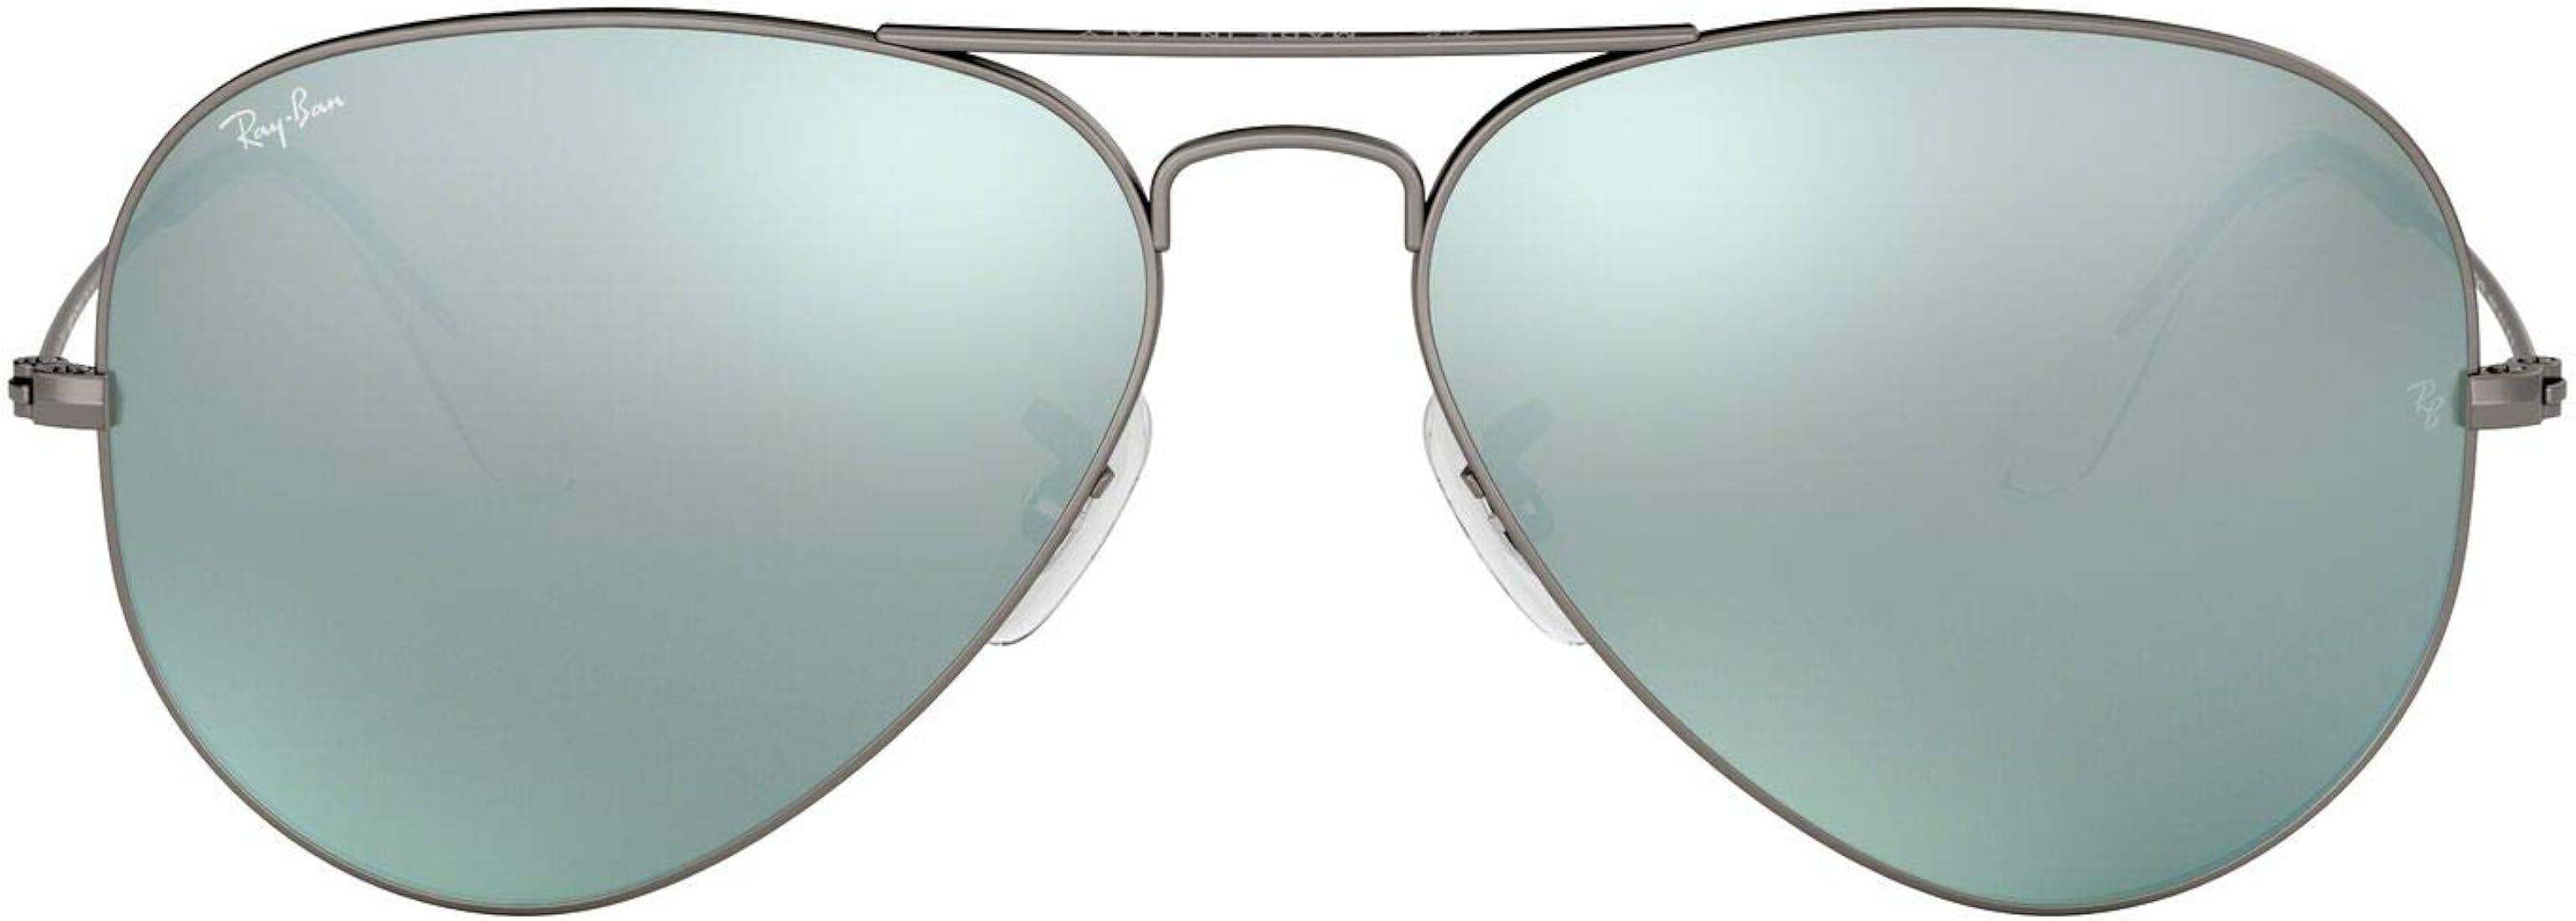 Ray-Ban Women's Rb3025 Classic Mirrored Aviator Sunglasses | Amazon (US)